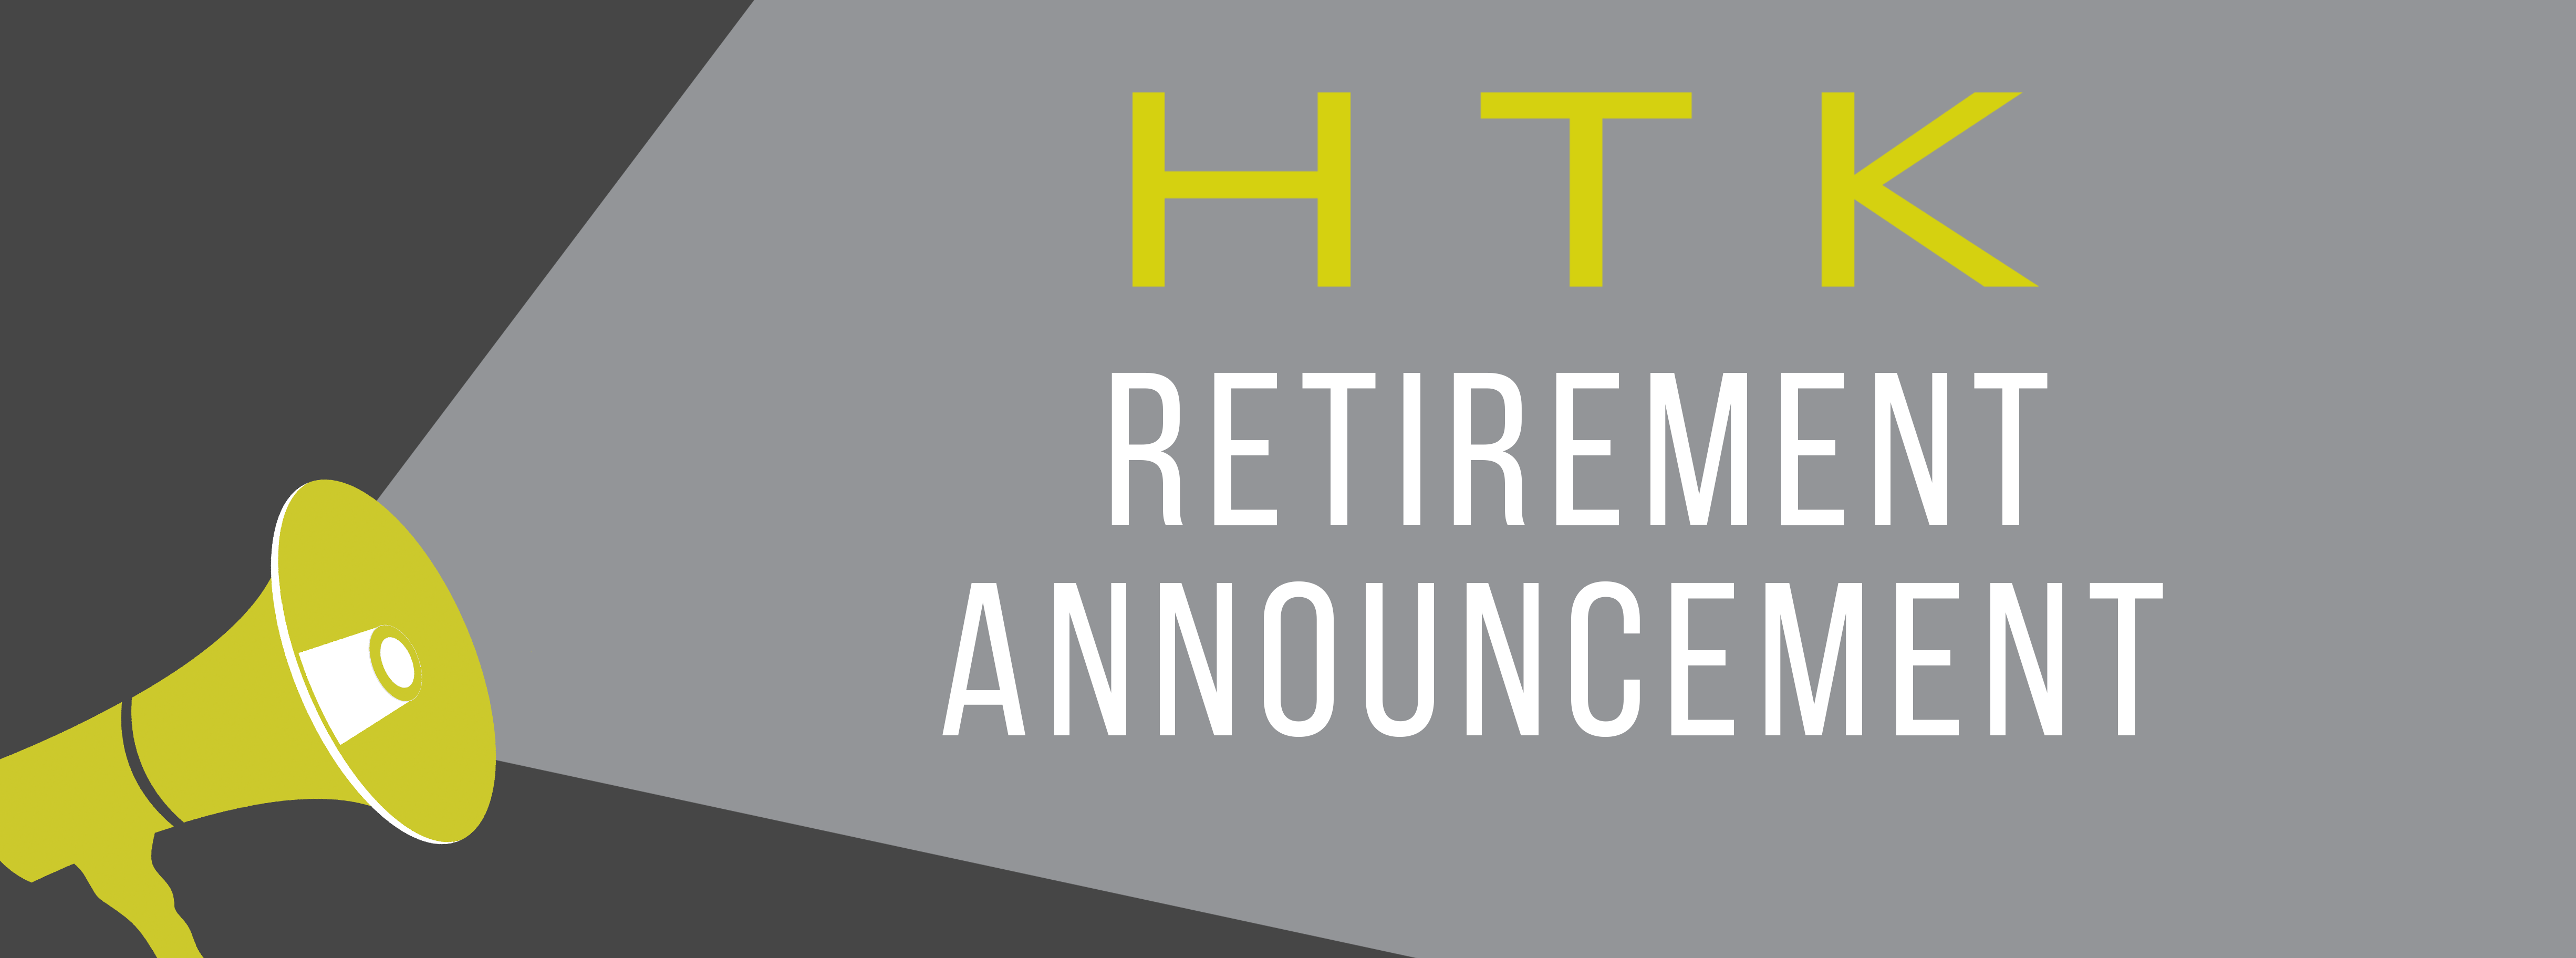 2019 htk retirement blog post